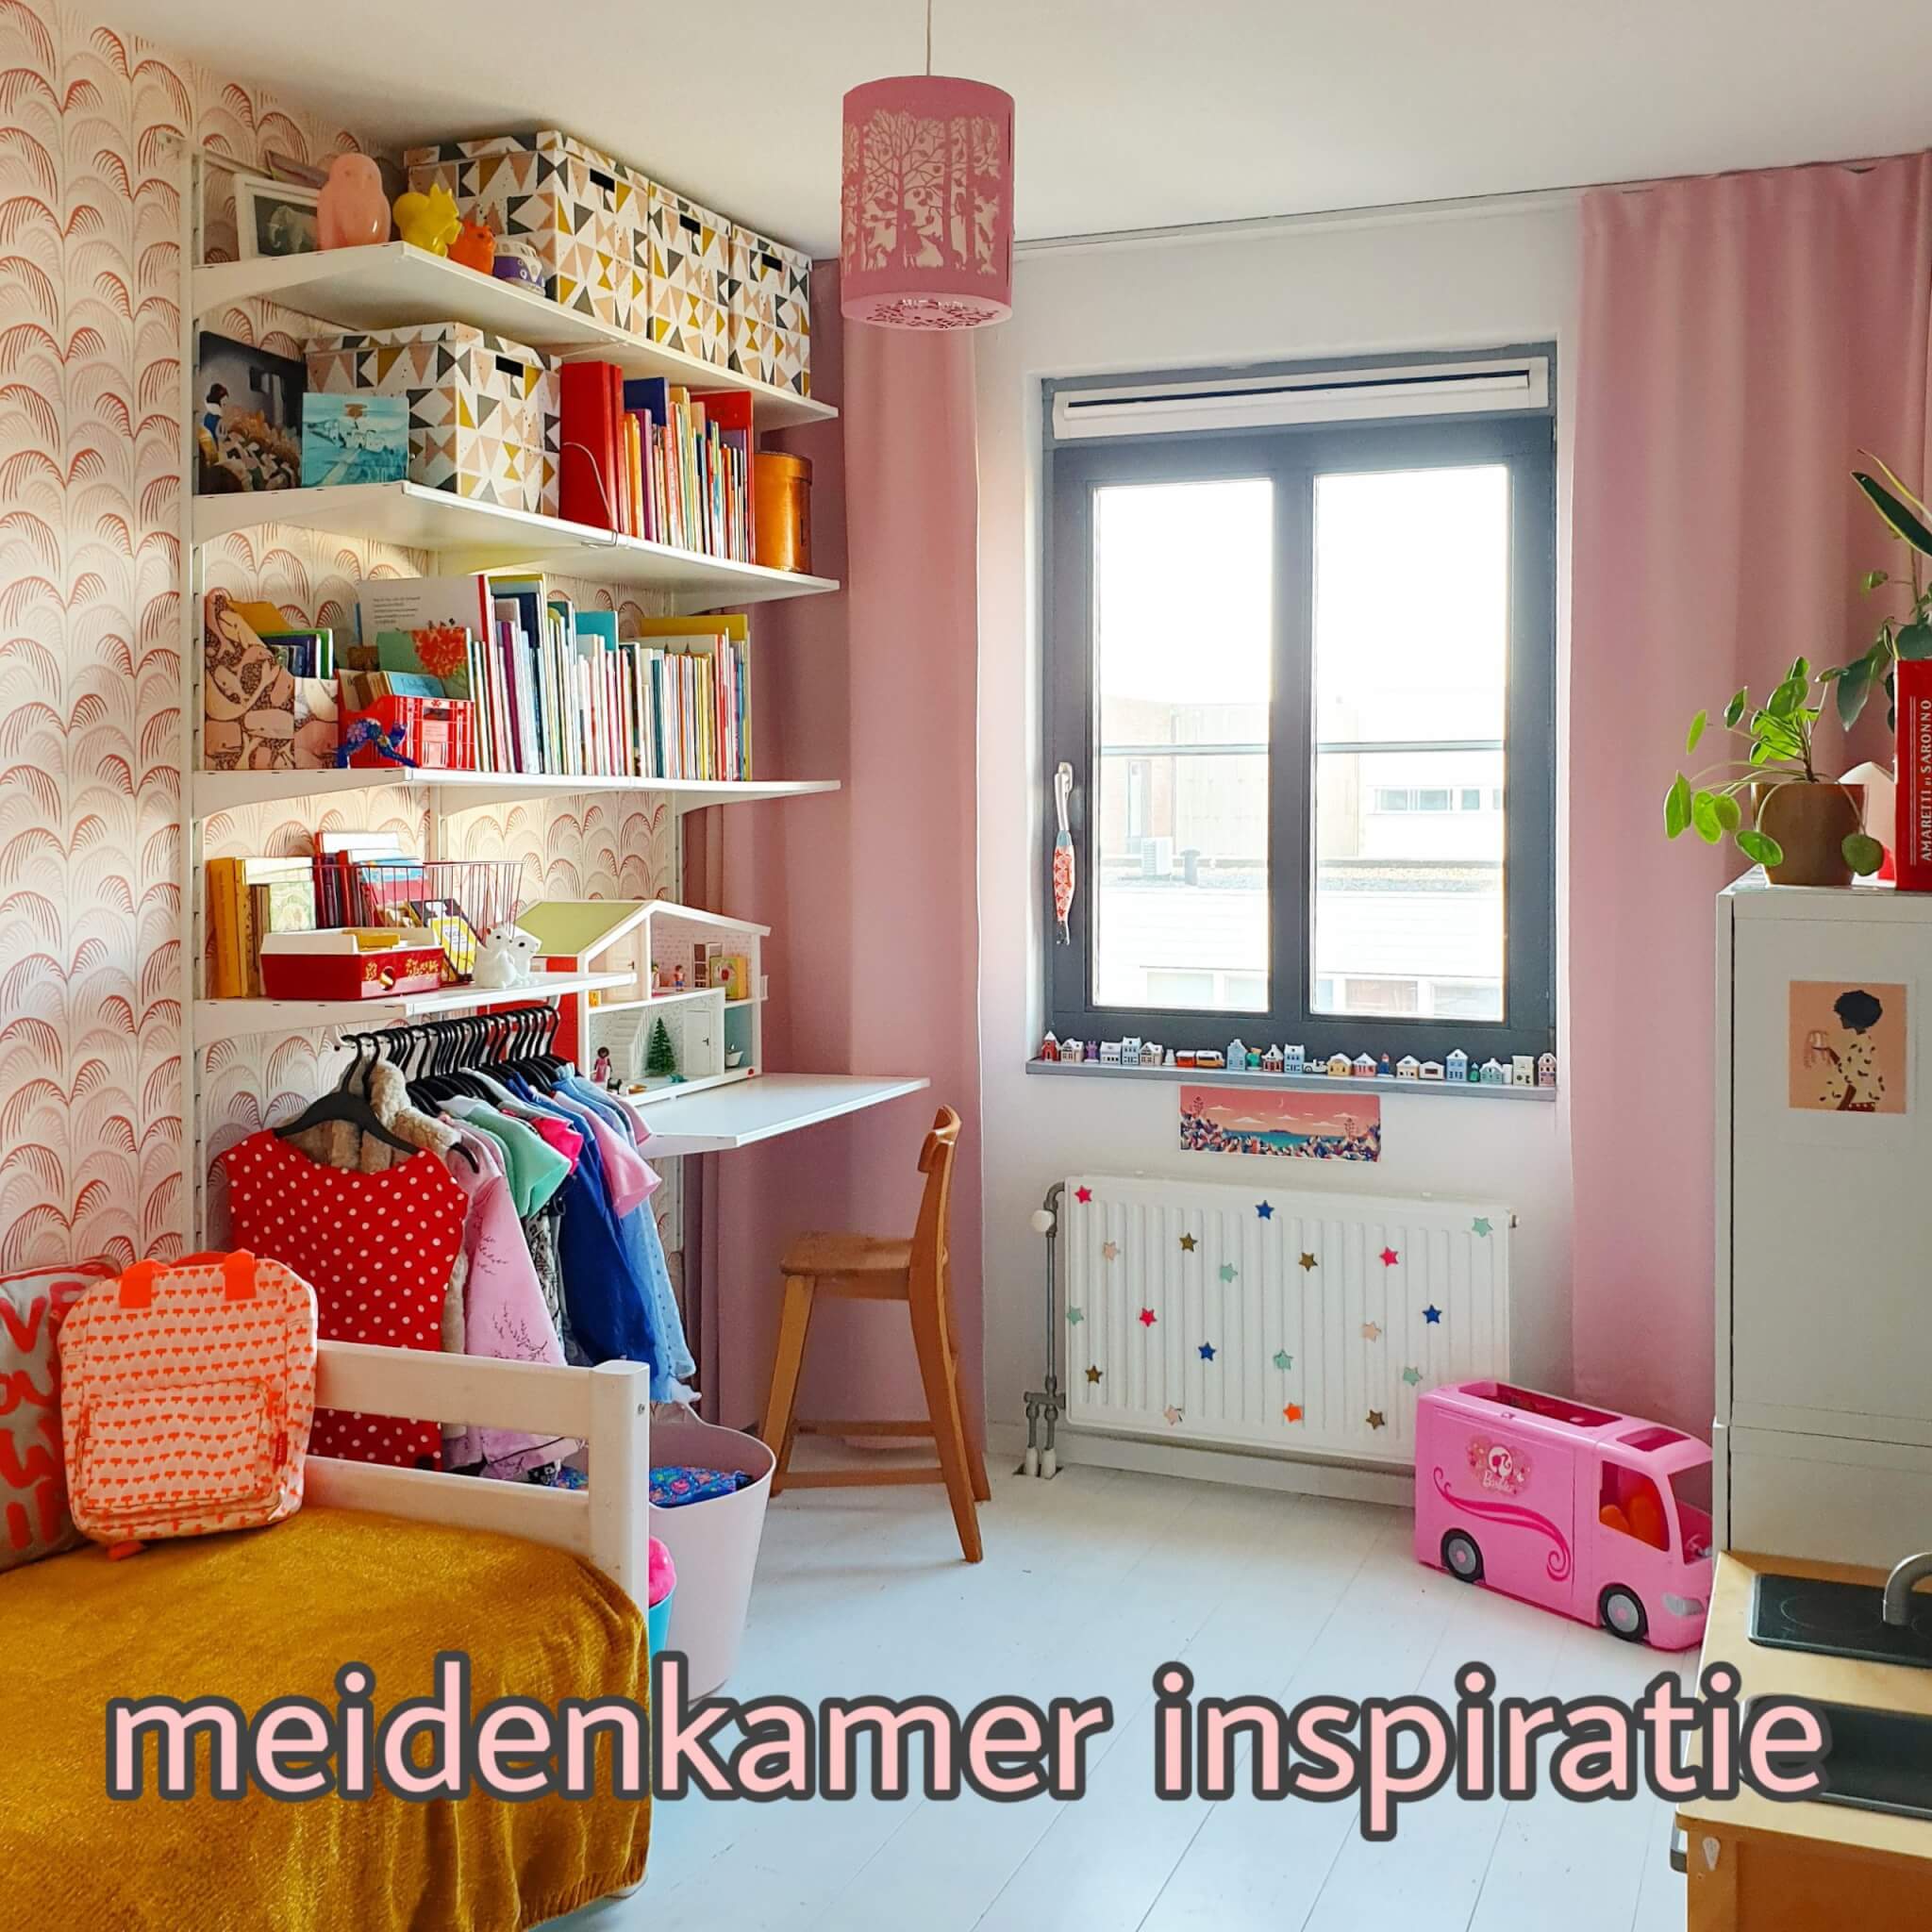 voorzichtig Onafhankelijk kreupel Kinderkamer inspiratie: onze meidenkamer met wit, roze, rood en geel Leuk  met kids